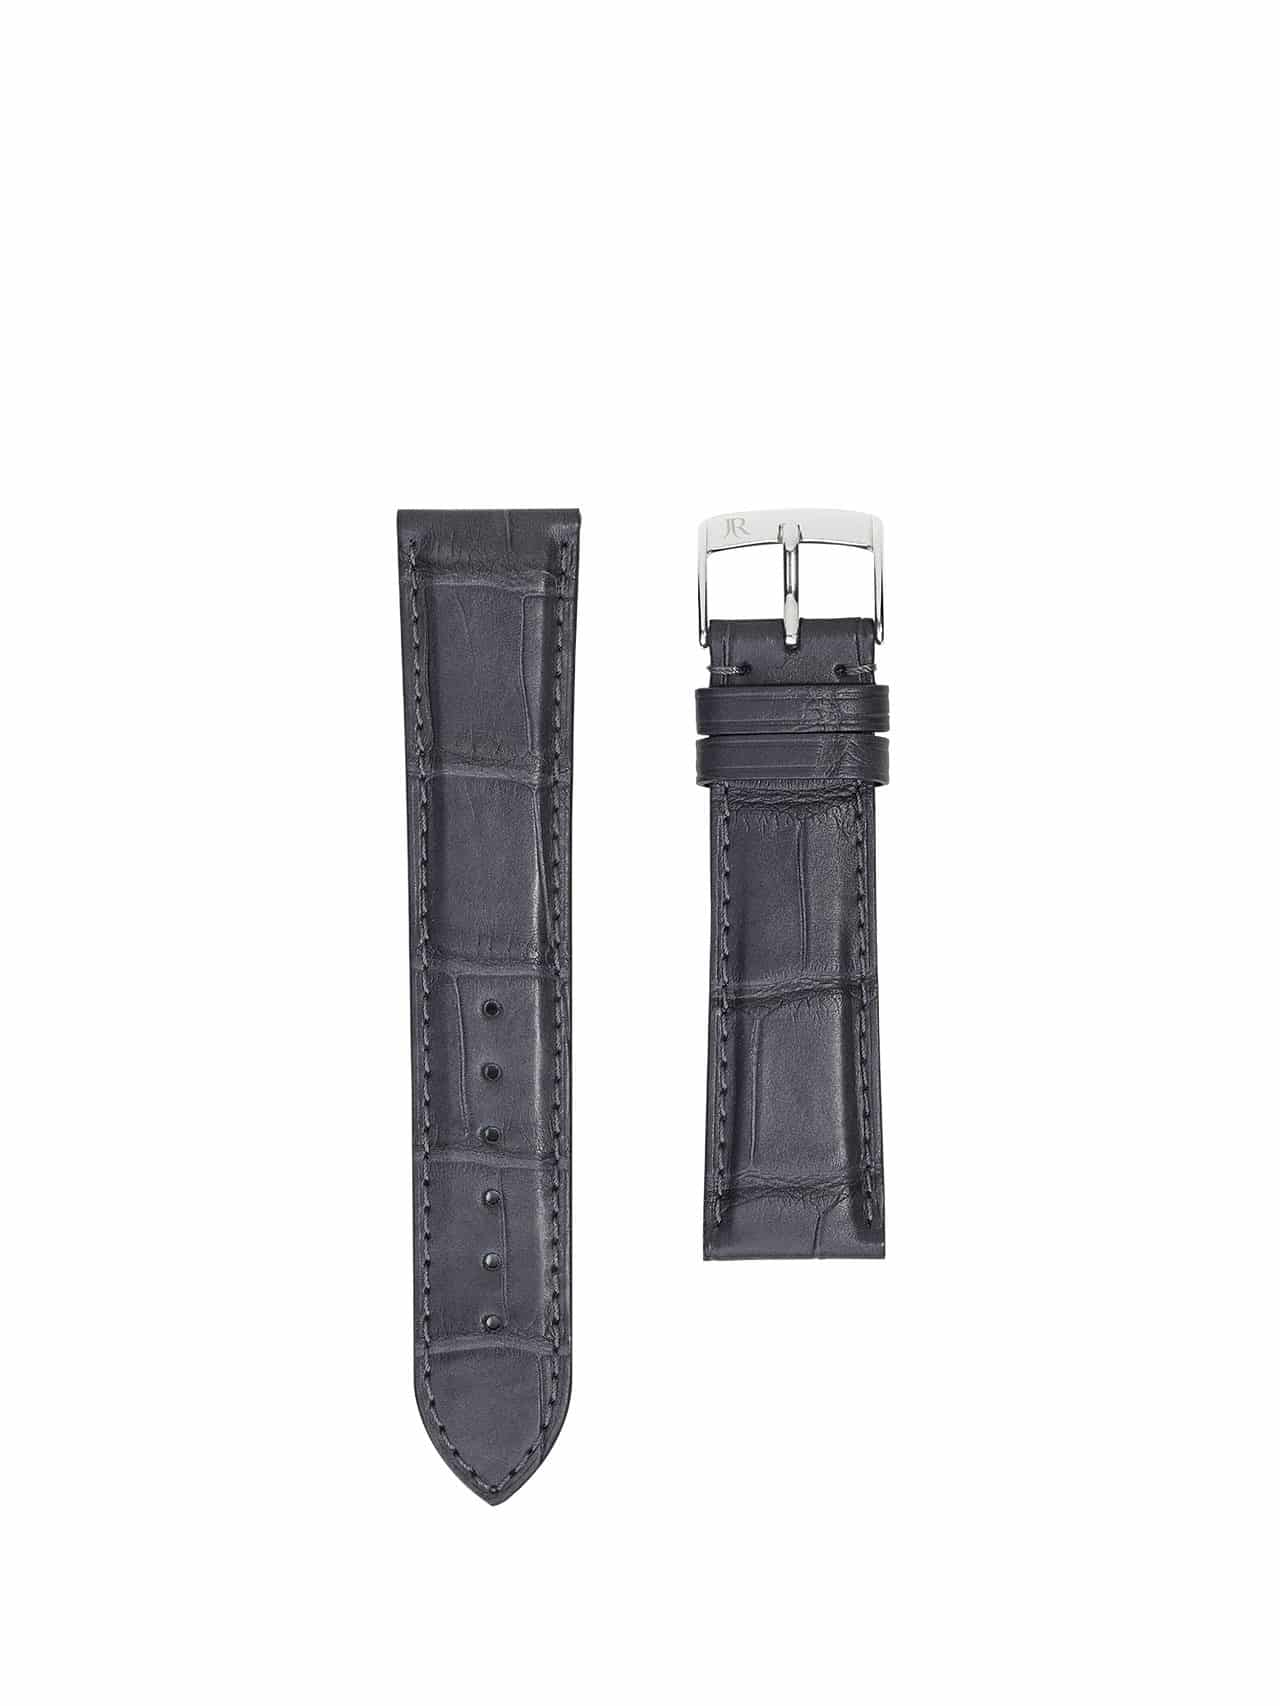 jean rousseau watch straps leather crocodile grey